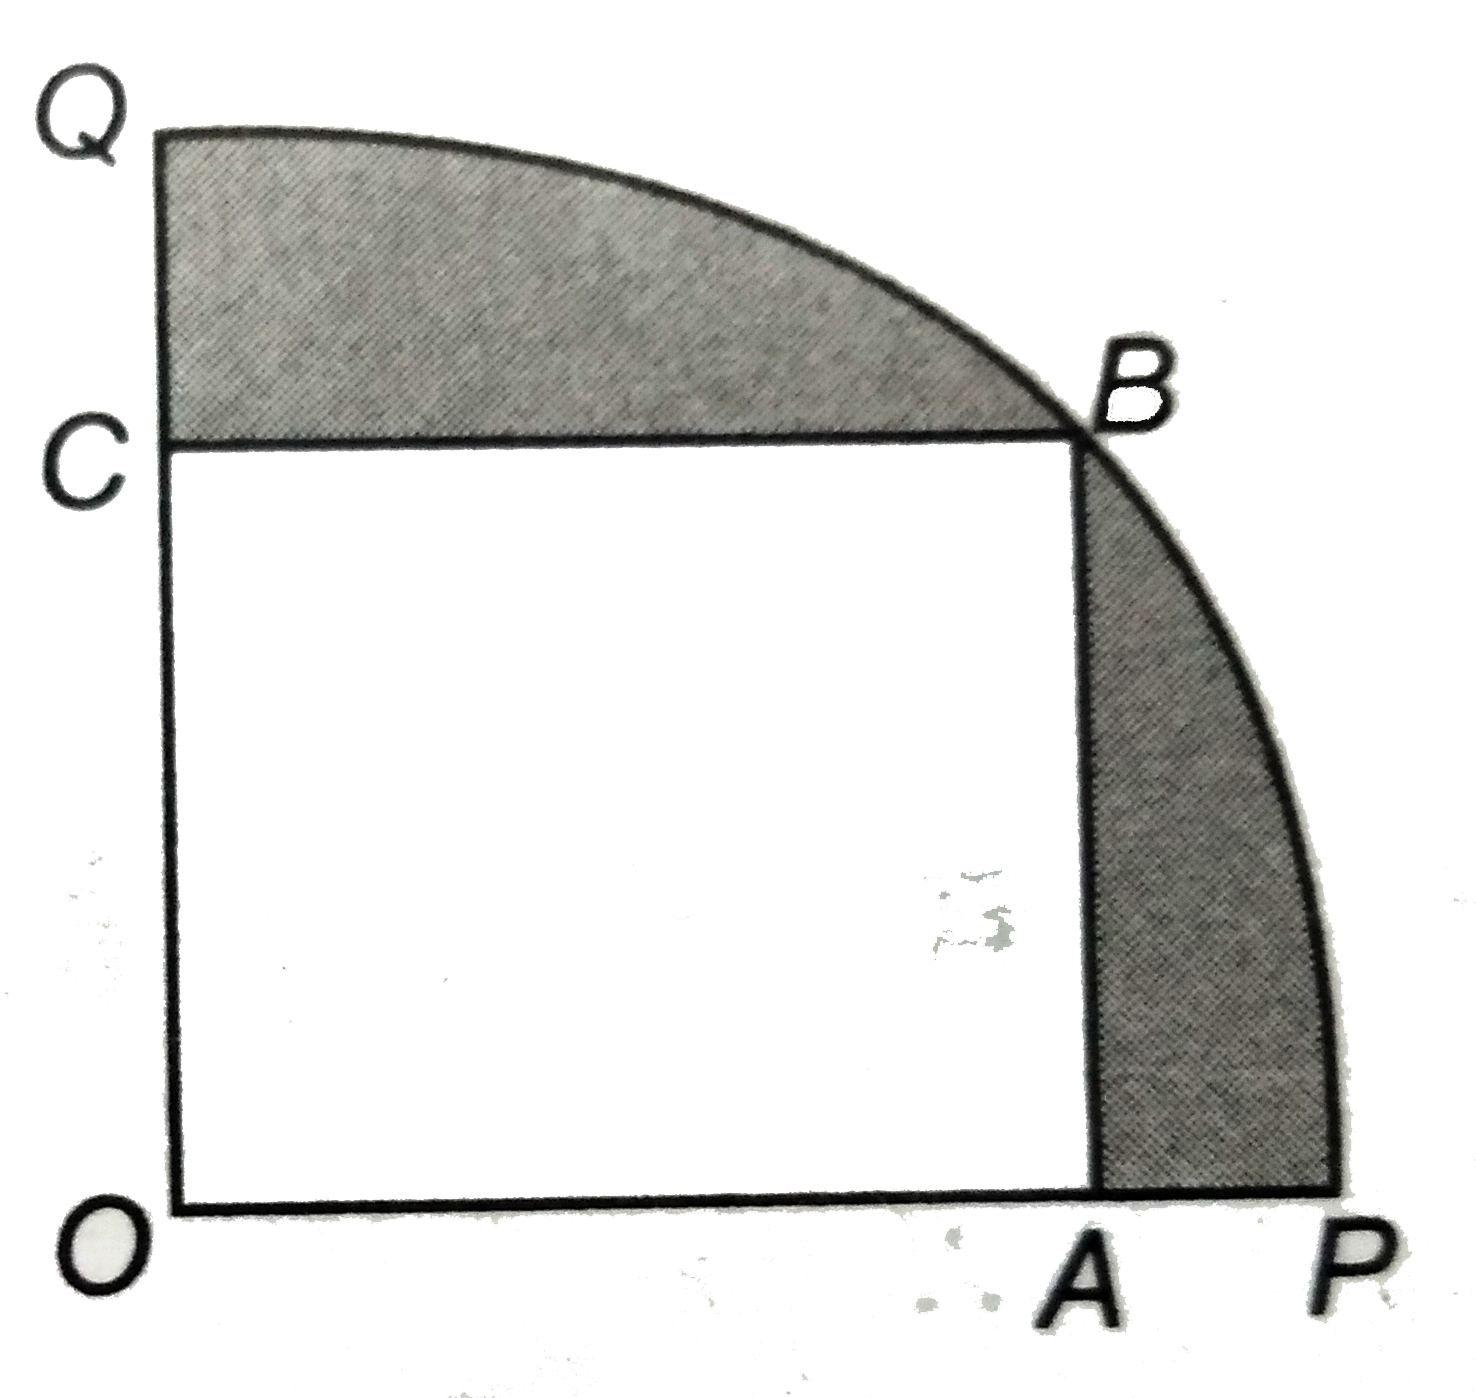 आकृति में , एक चतुर्थांश OPBQ  के अंतर्गत  एक वर्ग  OABC  बना हुआ है । यदि OA  = 20 सेमी है, तो  छायांकित  भाग का क्षेत्रफल ज्ञात कीजिए। (  pi = 3.14 लीजिए)